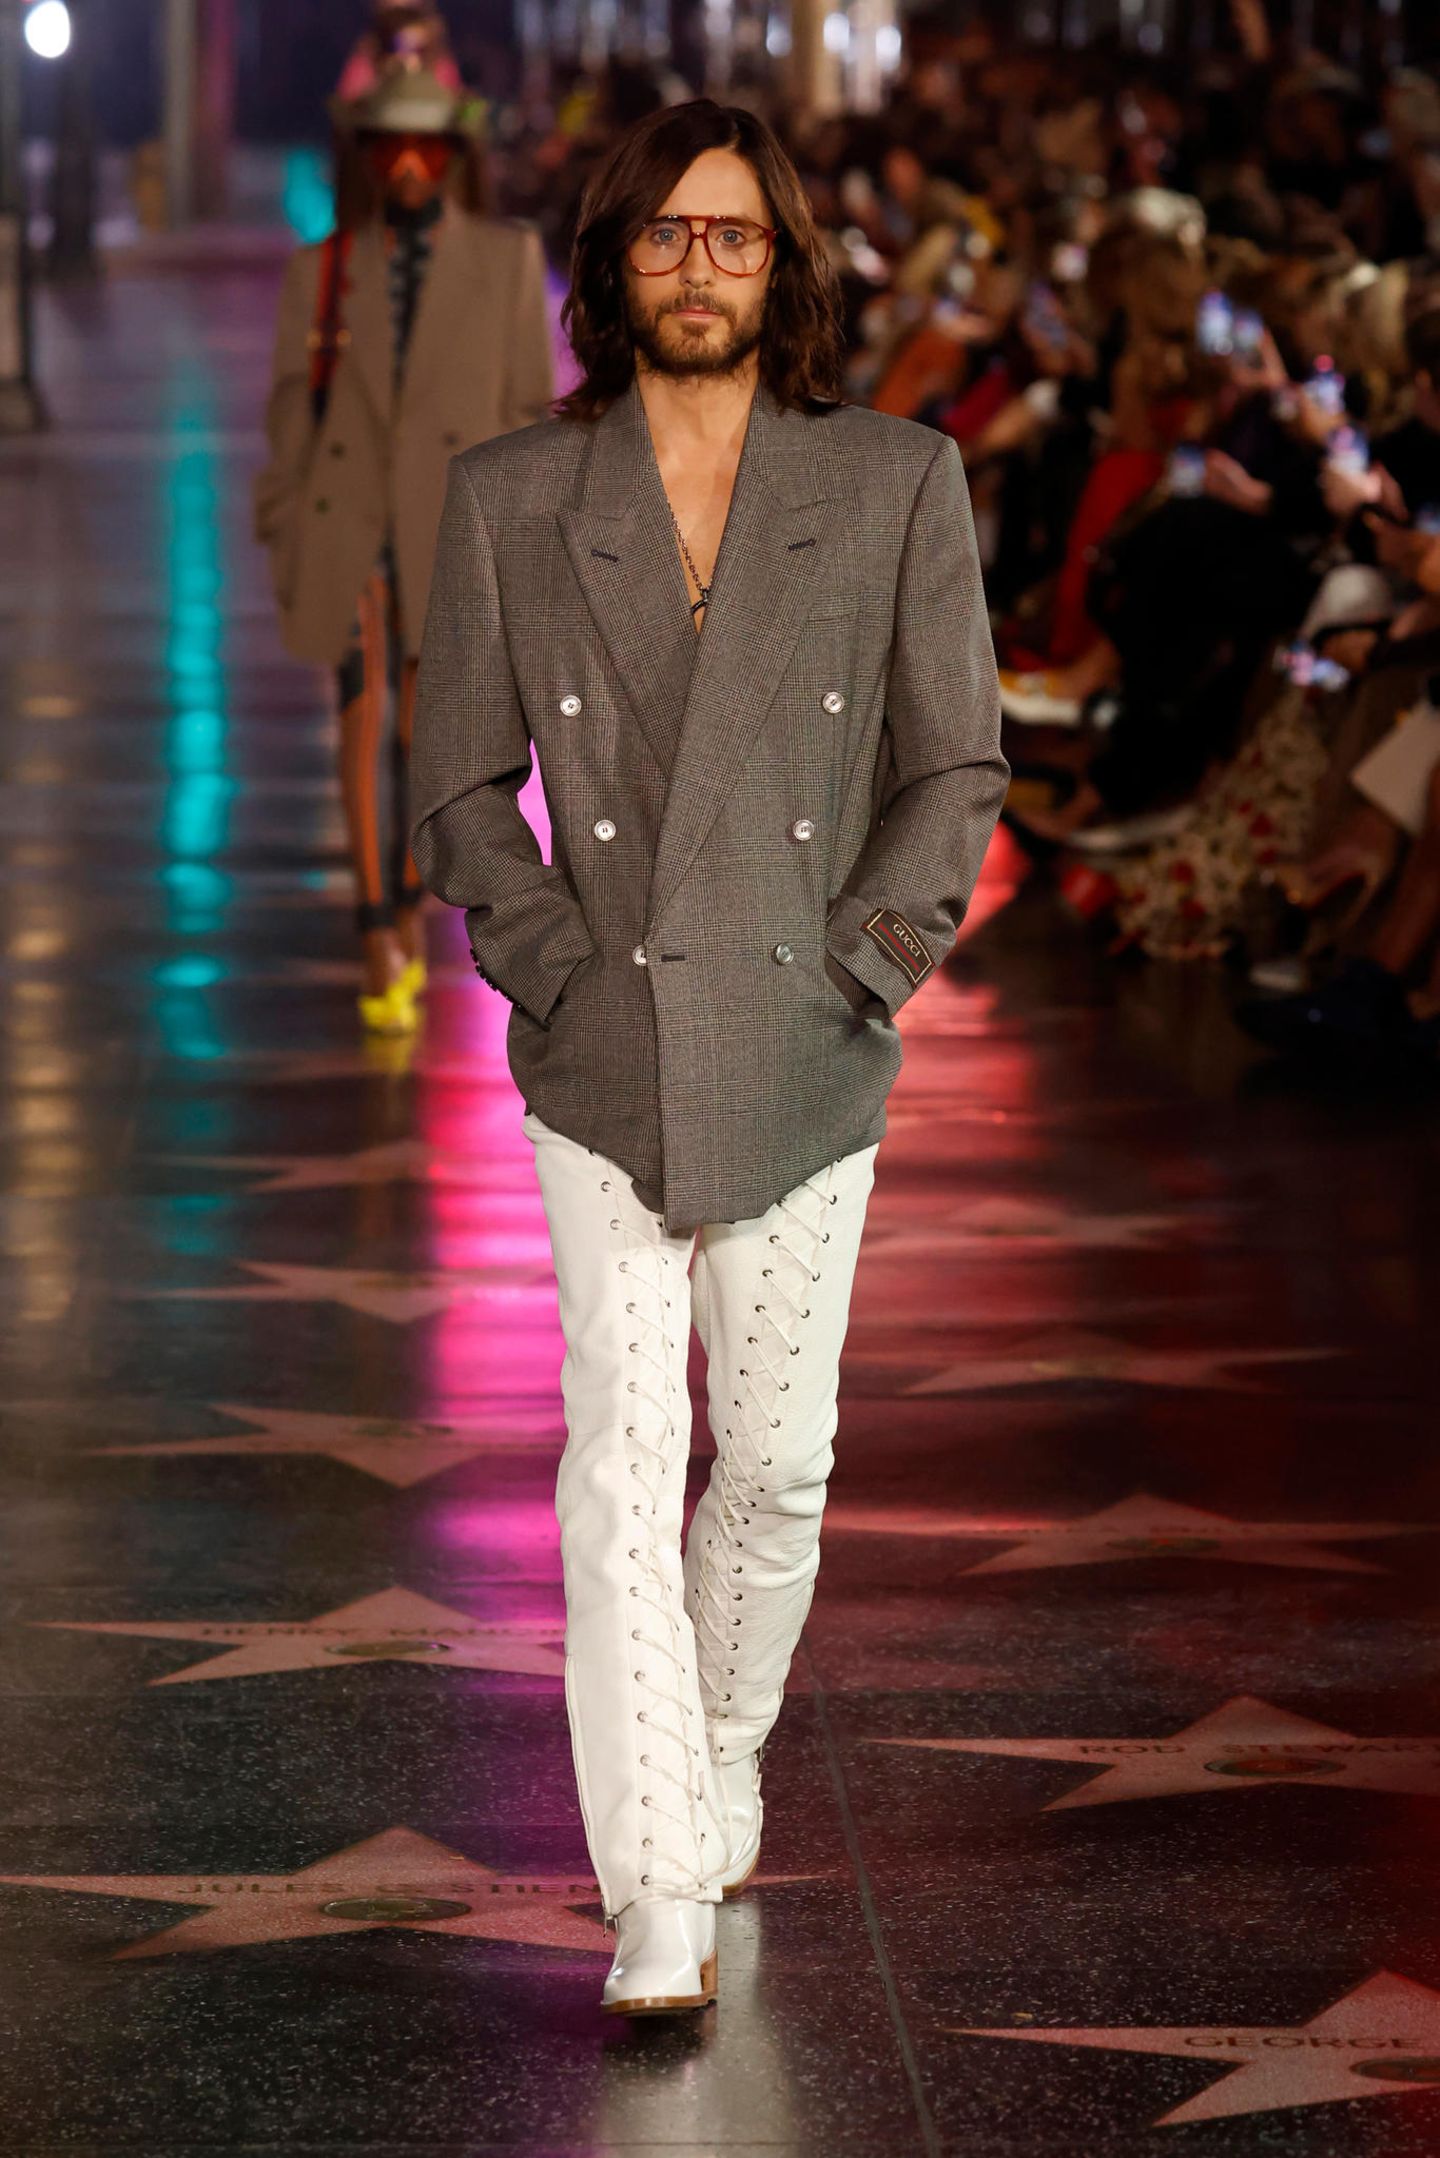 Jared Leto spielt im unter Modefans heiß ersehnten Film "House of Gucci" eine der Hauptrollen, und so darf er auf dem Runway der Love Parade nicht fehlen. In Oversize-Jackett und geschnürter Lederhose schreitet er über den Runway.